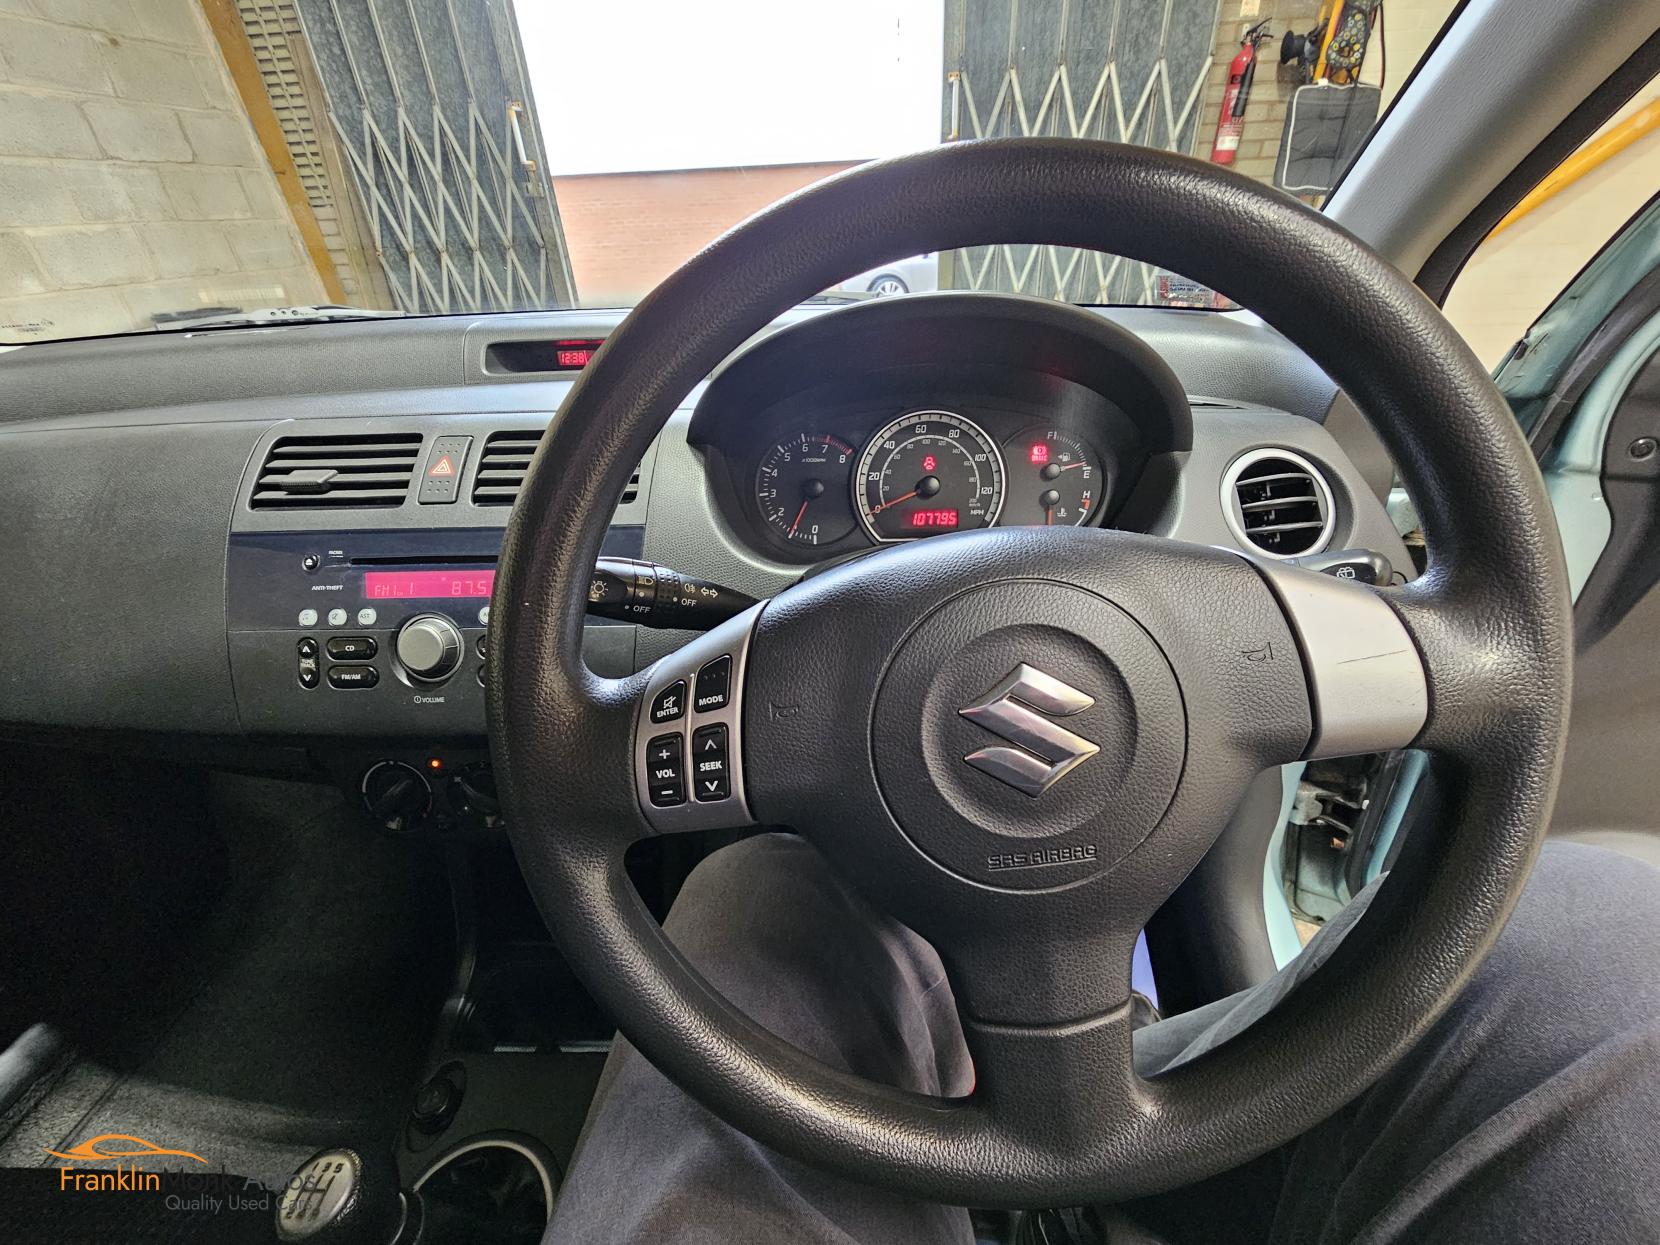 Suzuki Swift 1.5 GLX Hatchback 5dr Petrol Manual (159 g/km, 101 bhp)